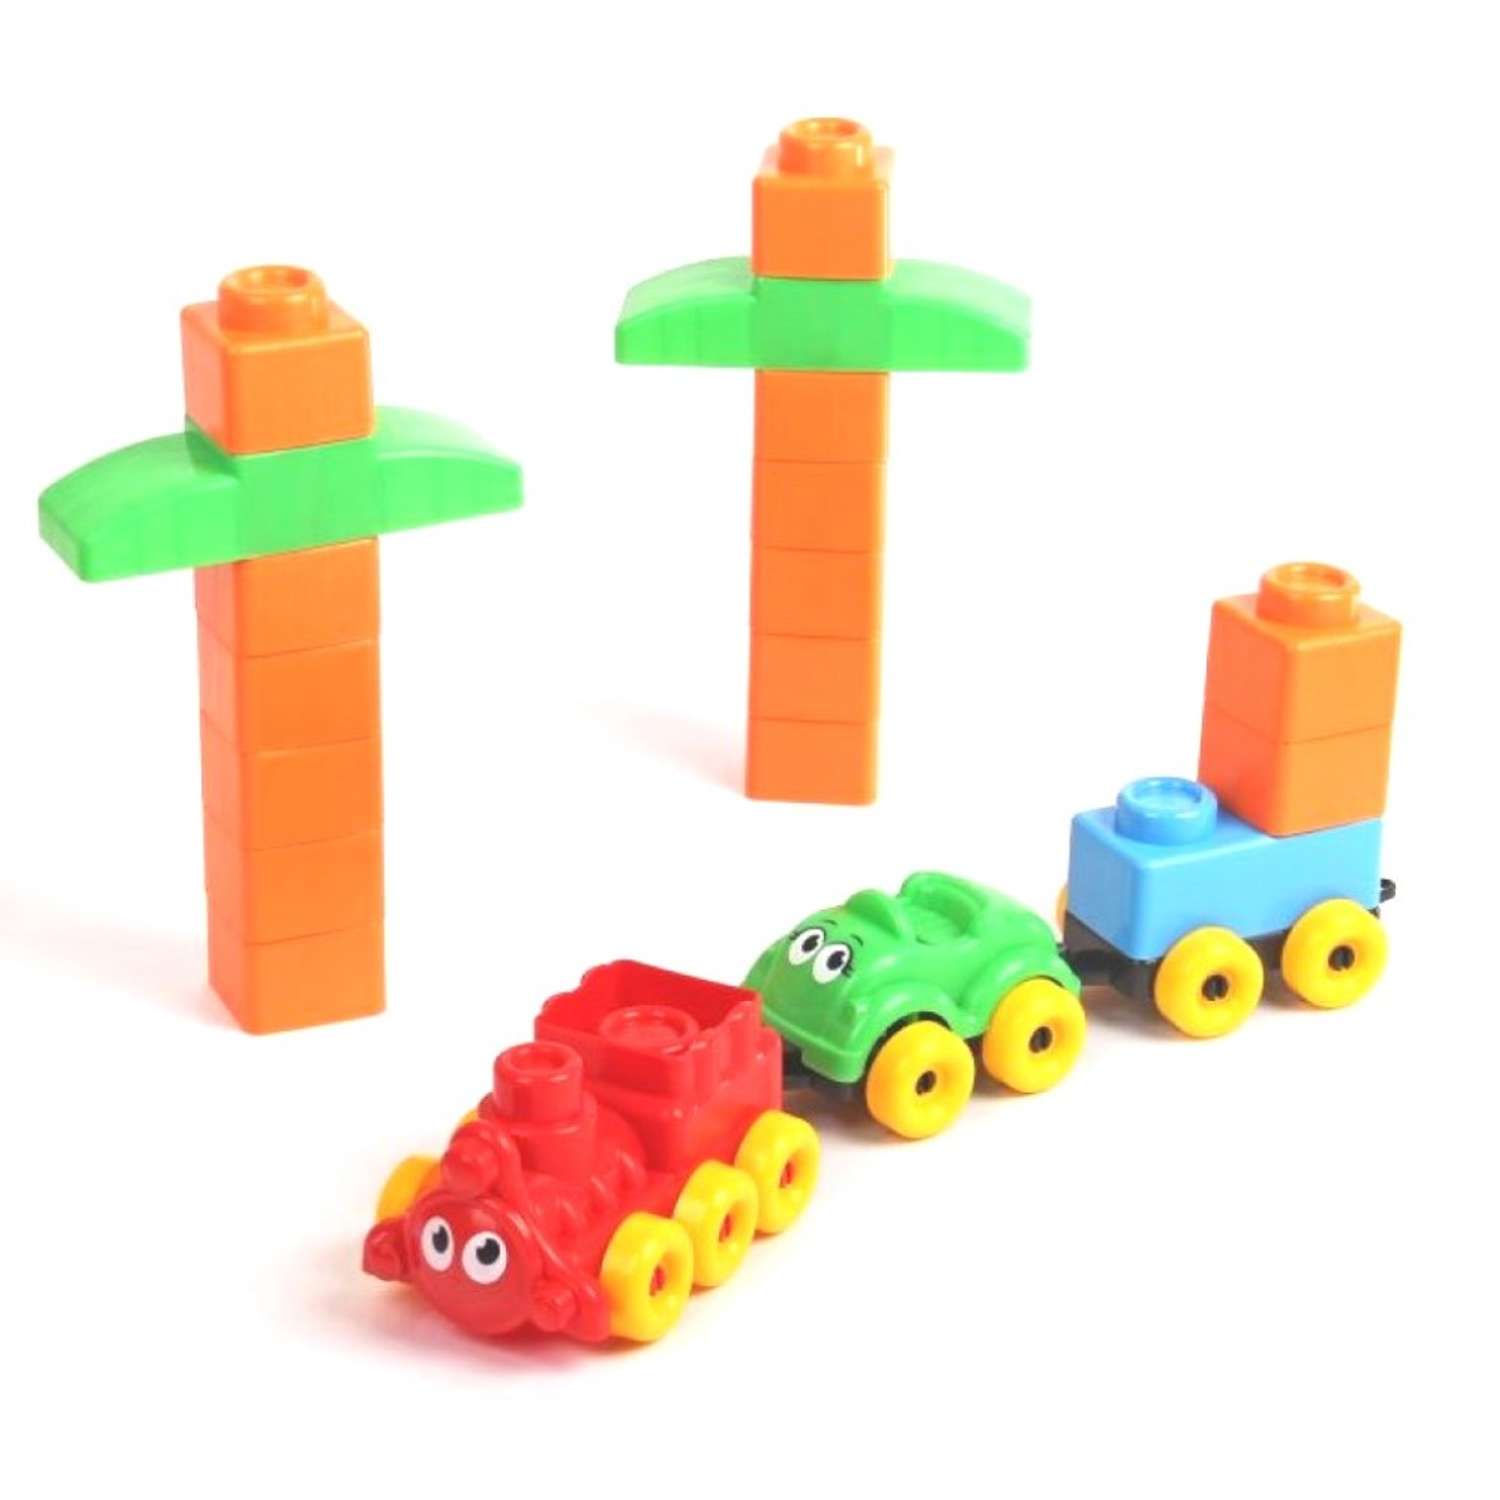 Развивающие игрушки БИПЛАНТ для малышей Конструктор Кноп-Кнопыч 114 деталей + Сортер Кубик логический малый - фото 6